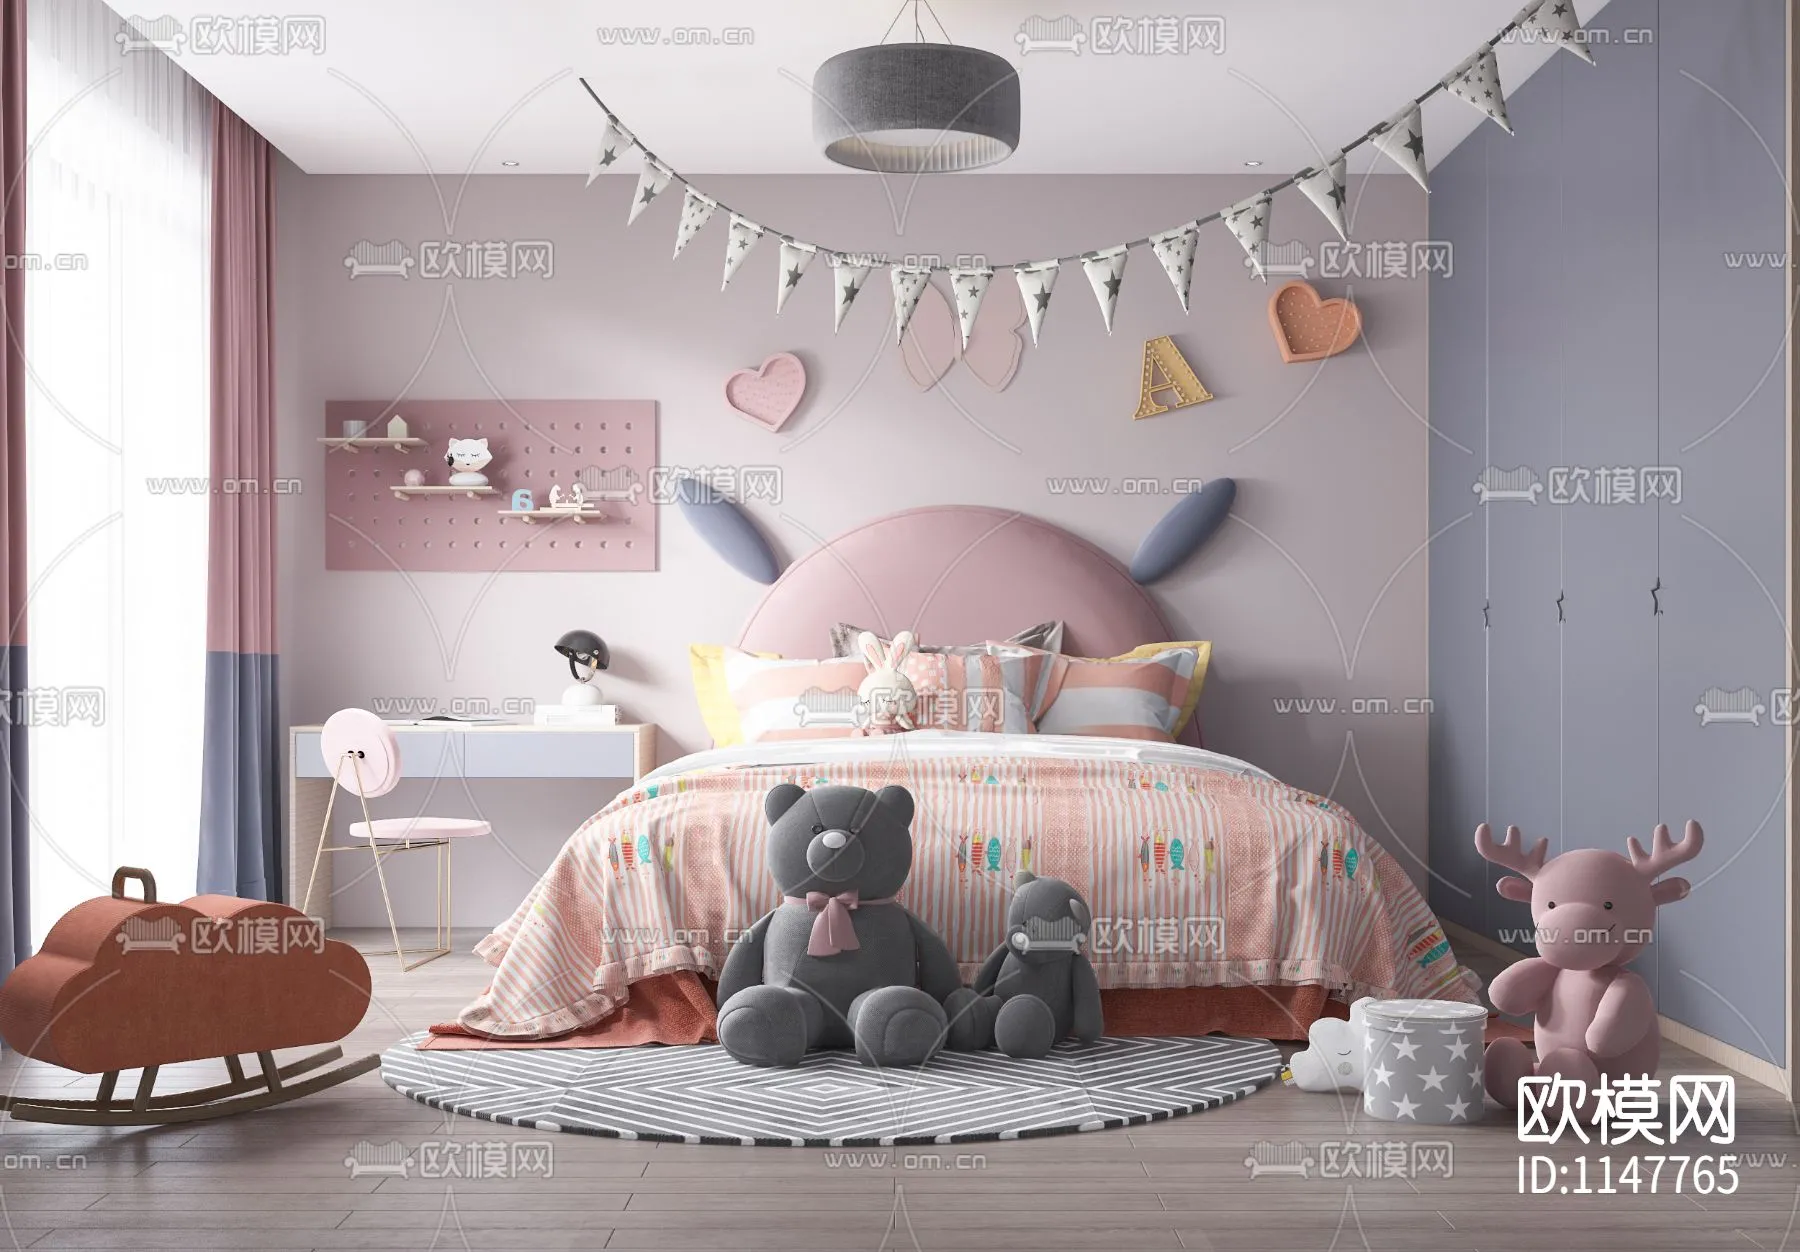 Children Room 3D Scenes – 0313